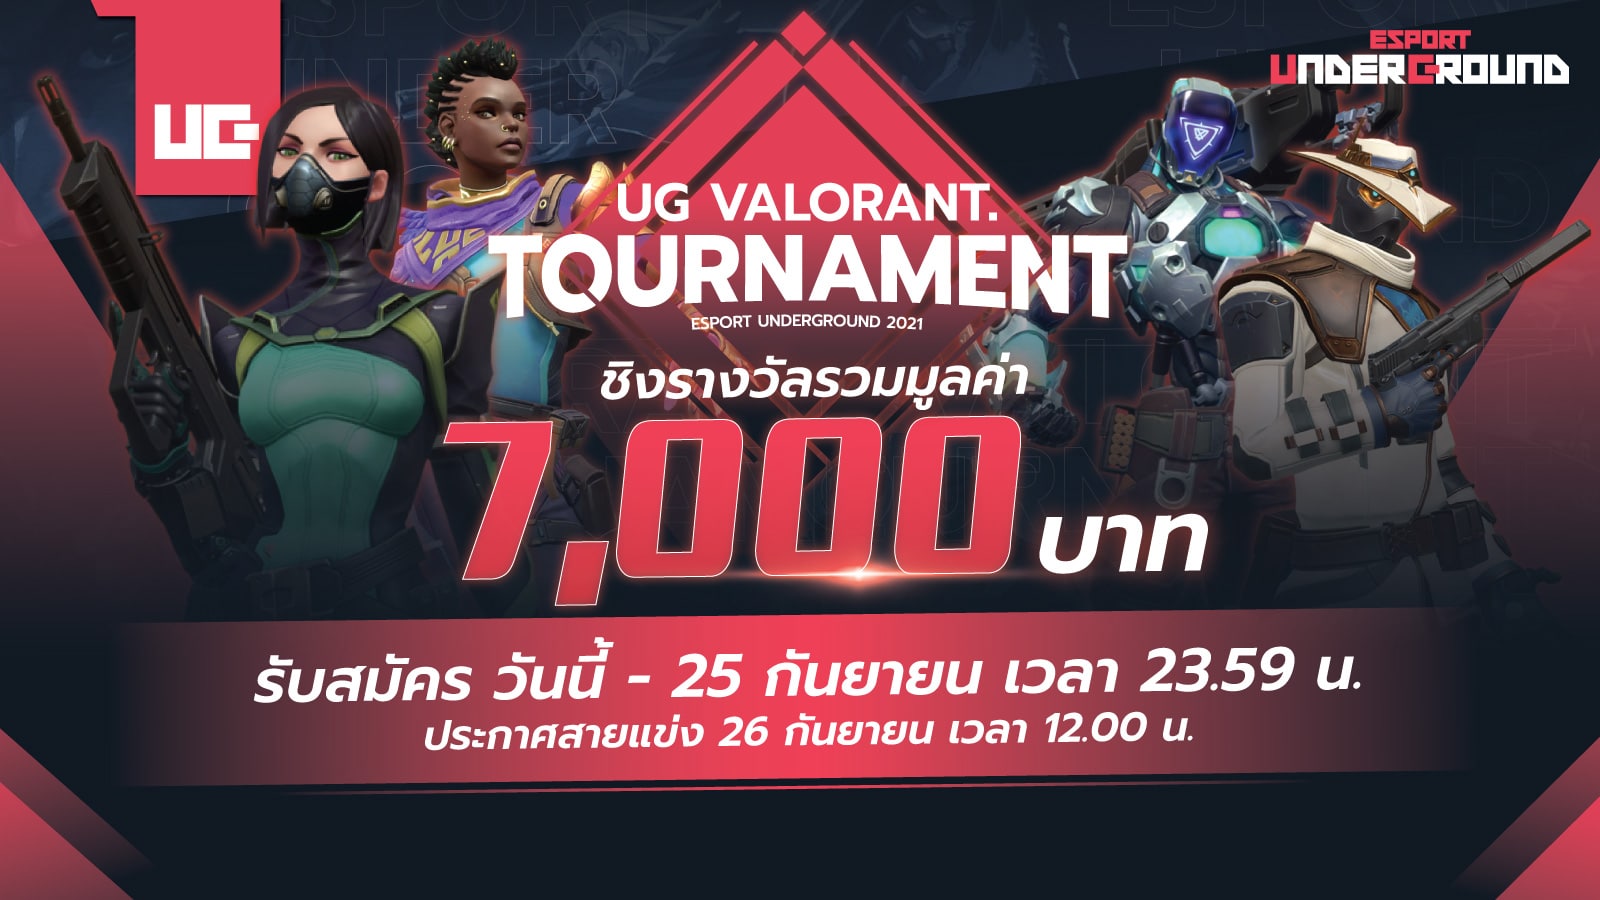 เปิดรับสมัคร UG Valorant Tournament ชิงเงินรางวัลรวม 7,000 บาท